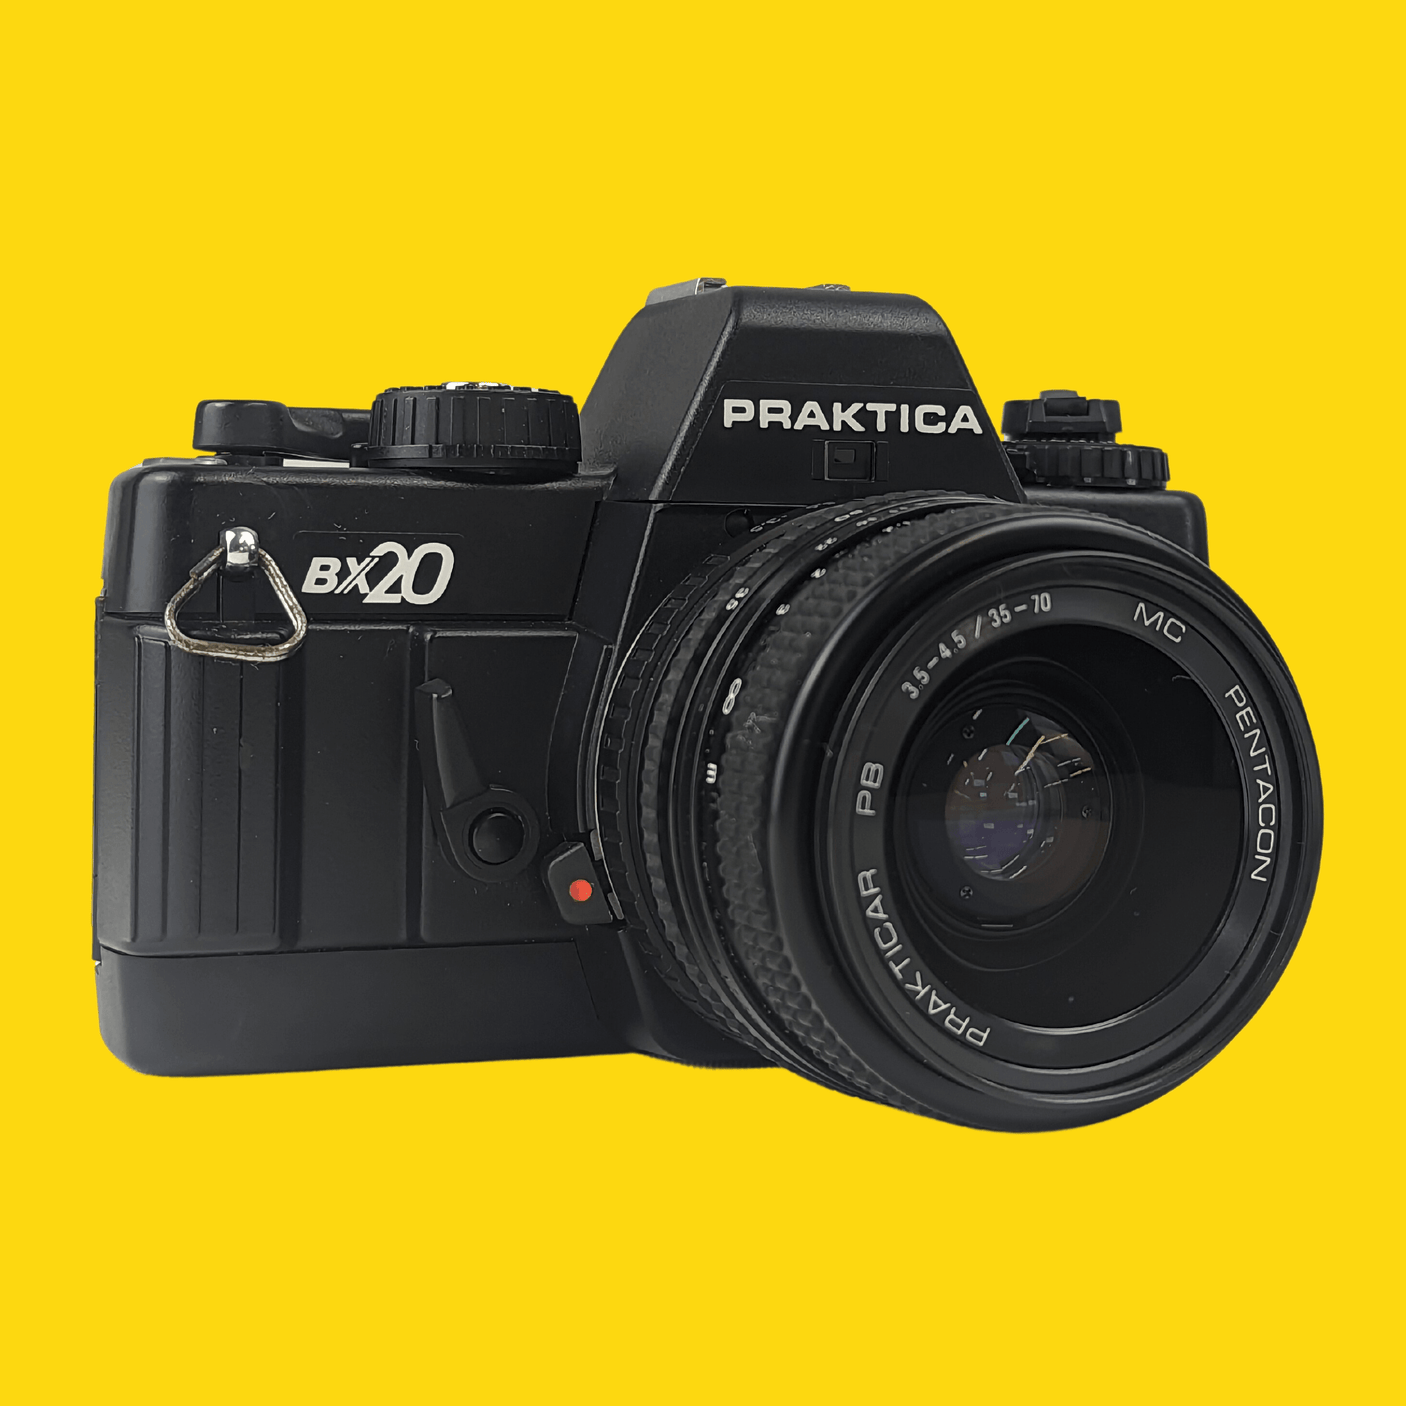 Praktica BX20 Electronic 35mm SLR Film Camera with Praktica lens